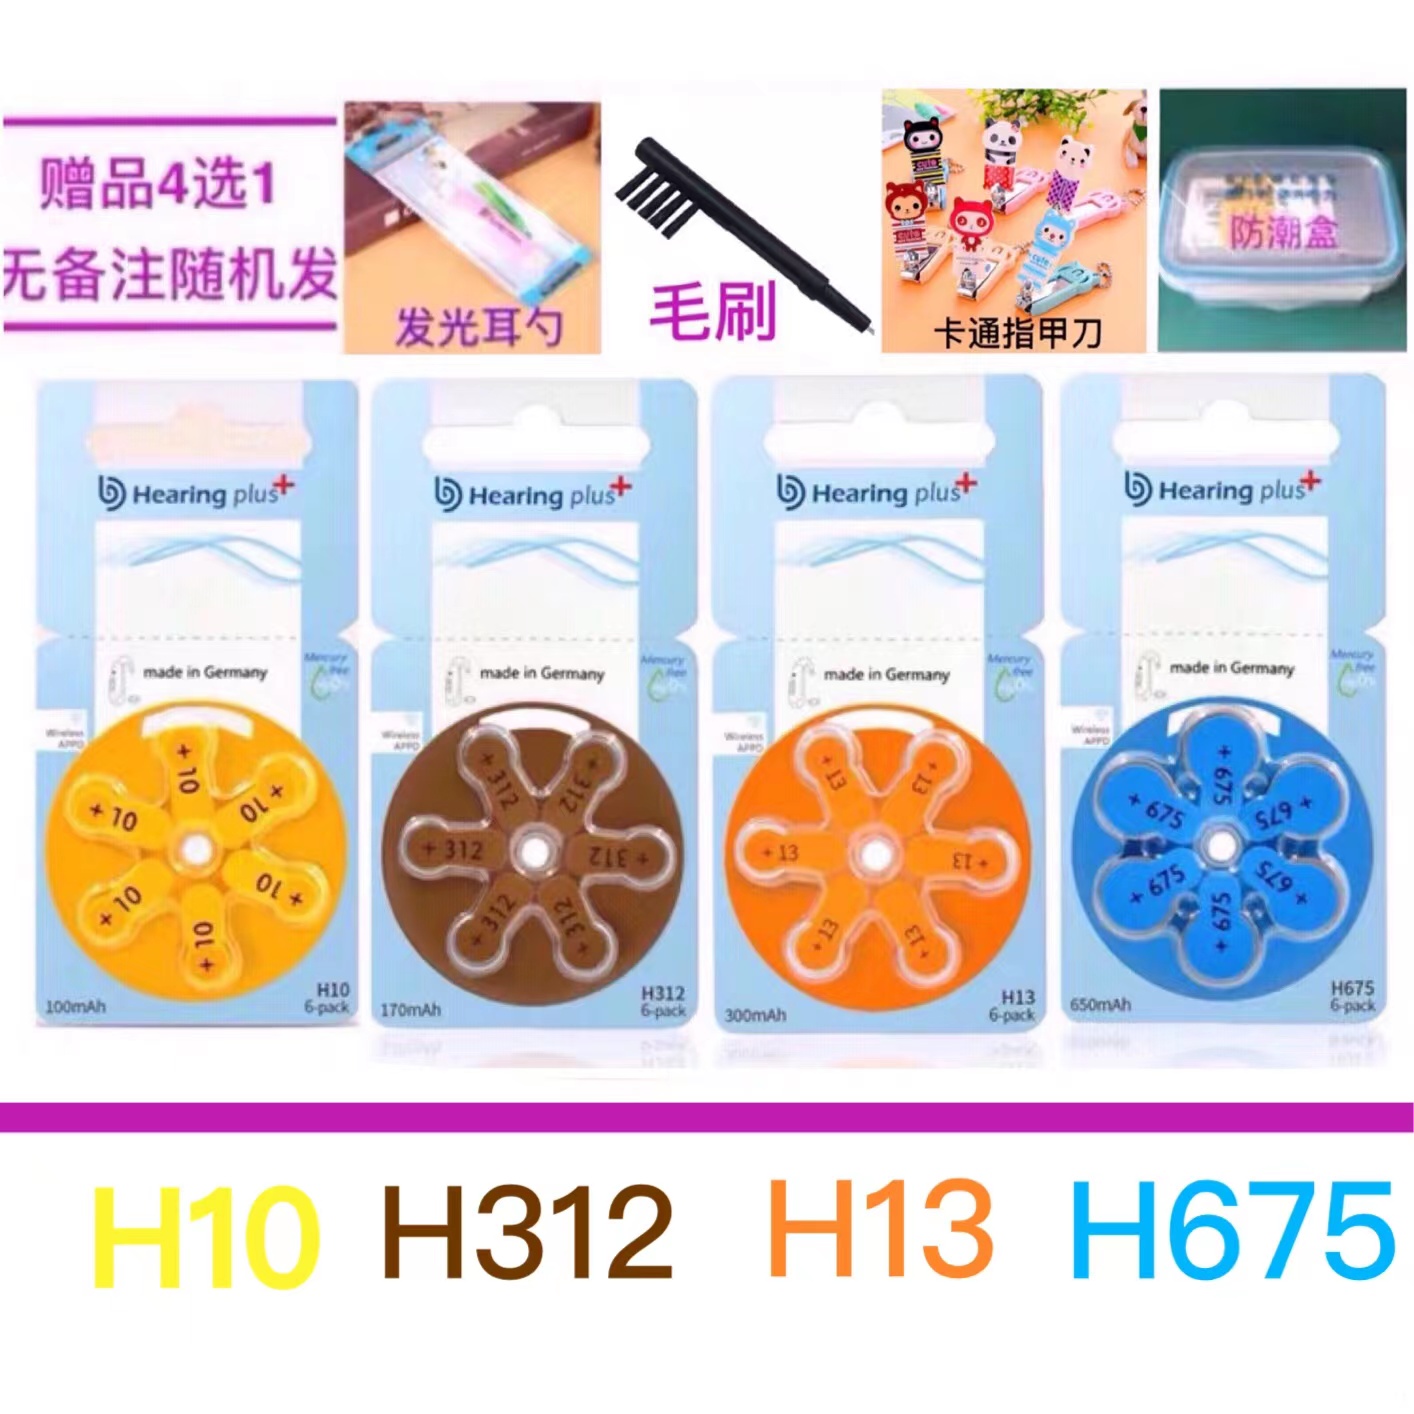 助听器电池H10、H312、H13、H675